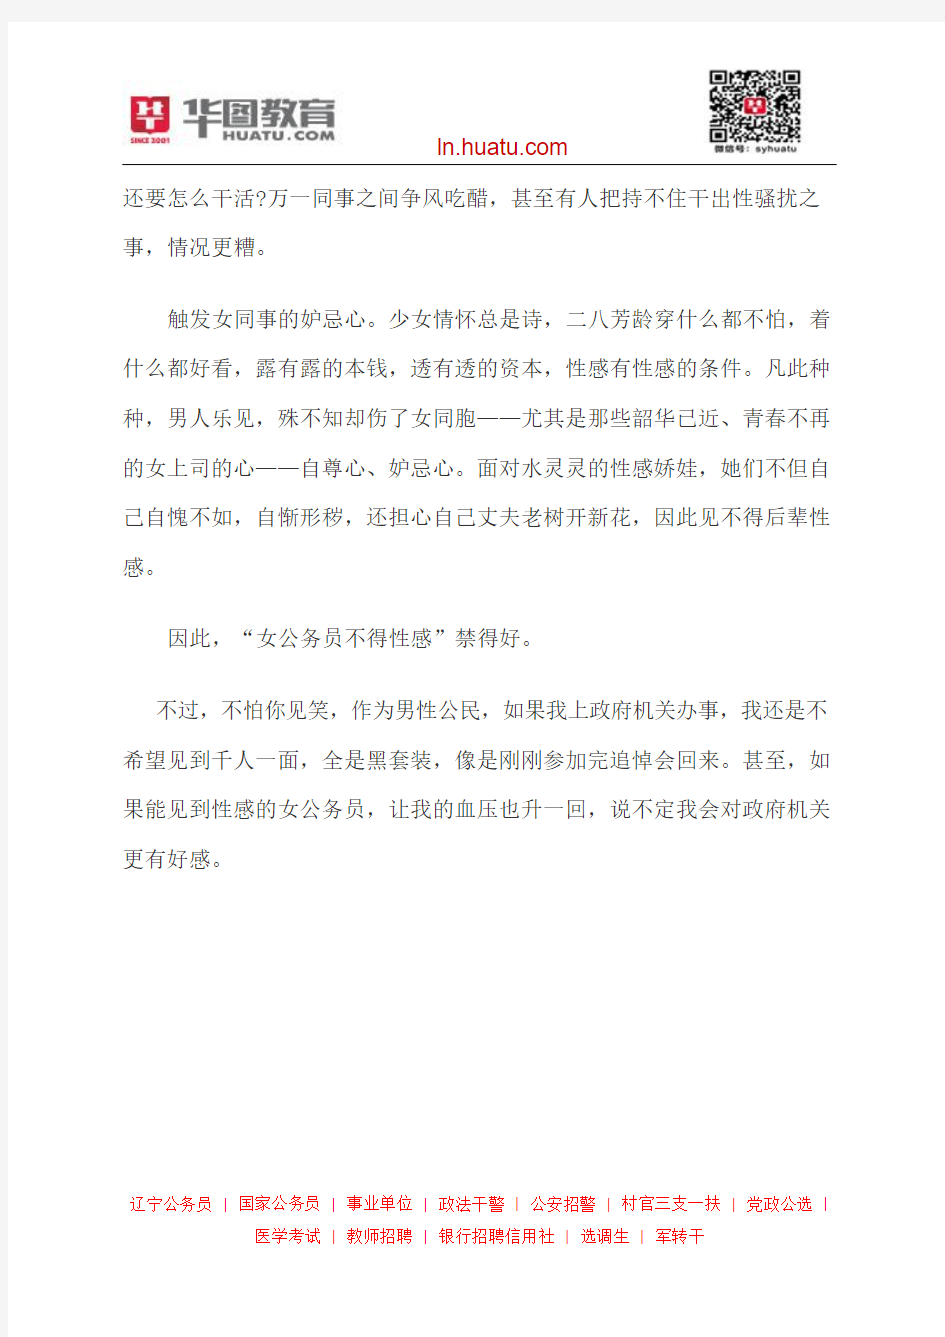 2014辽宁省公务员考试申论热点：“女公务员不得性感”禁得好